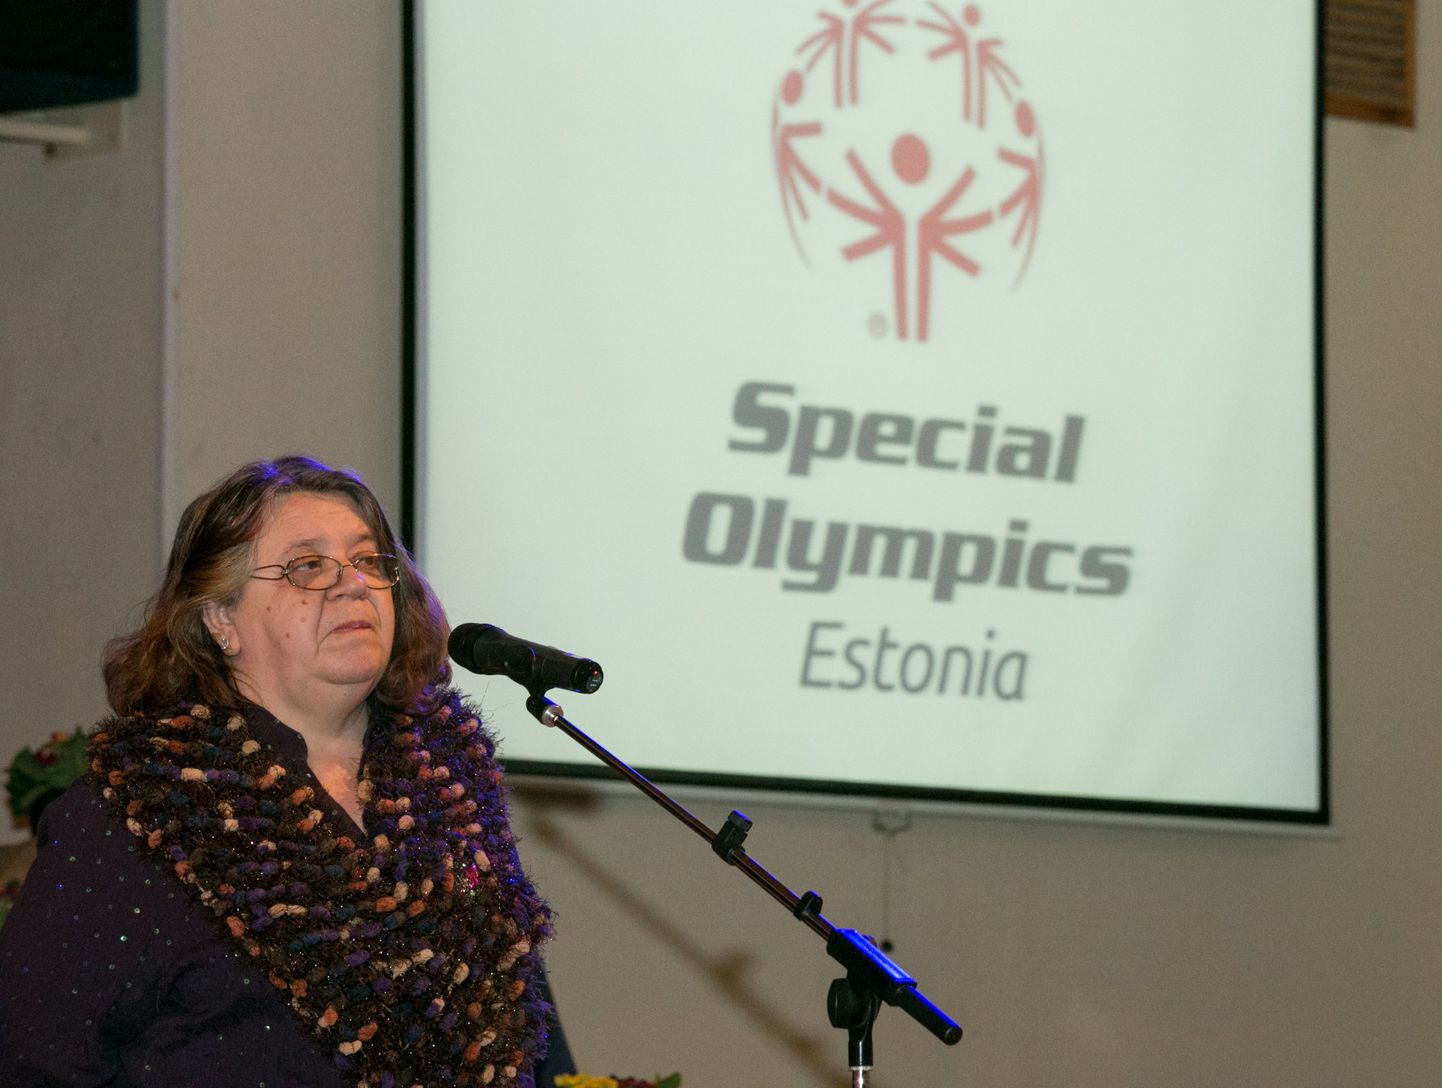 Vastemõisa rahvamajas eriolümpia Eesti ühenduse tänuüritus parimatele sportlastele ja nende õpetajatele. Pildil Leili Kuusk.